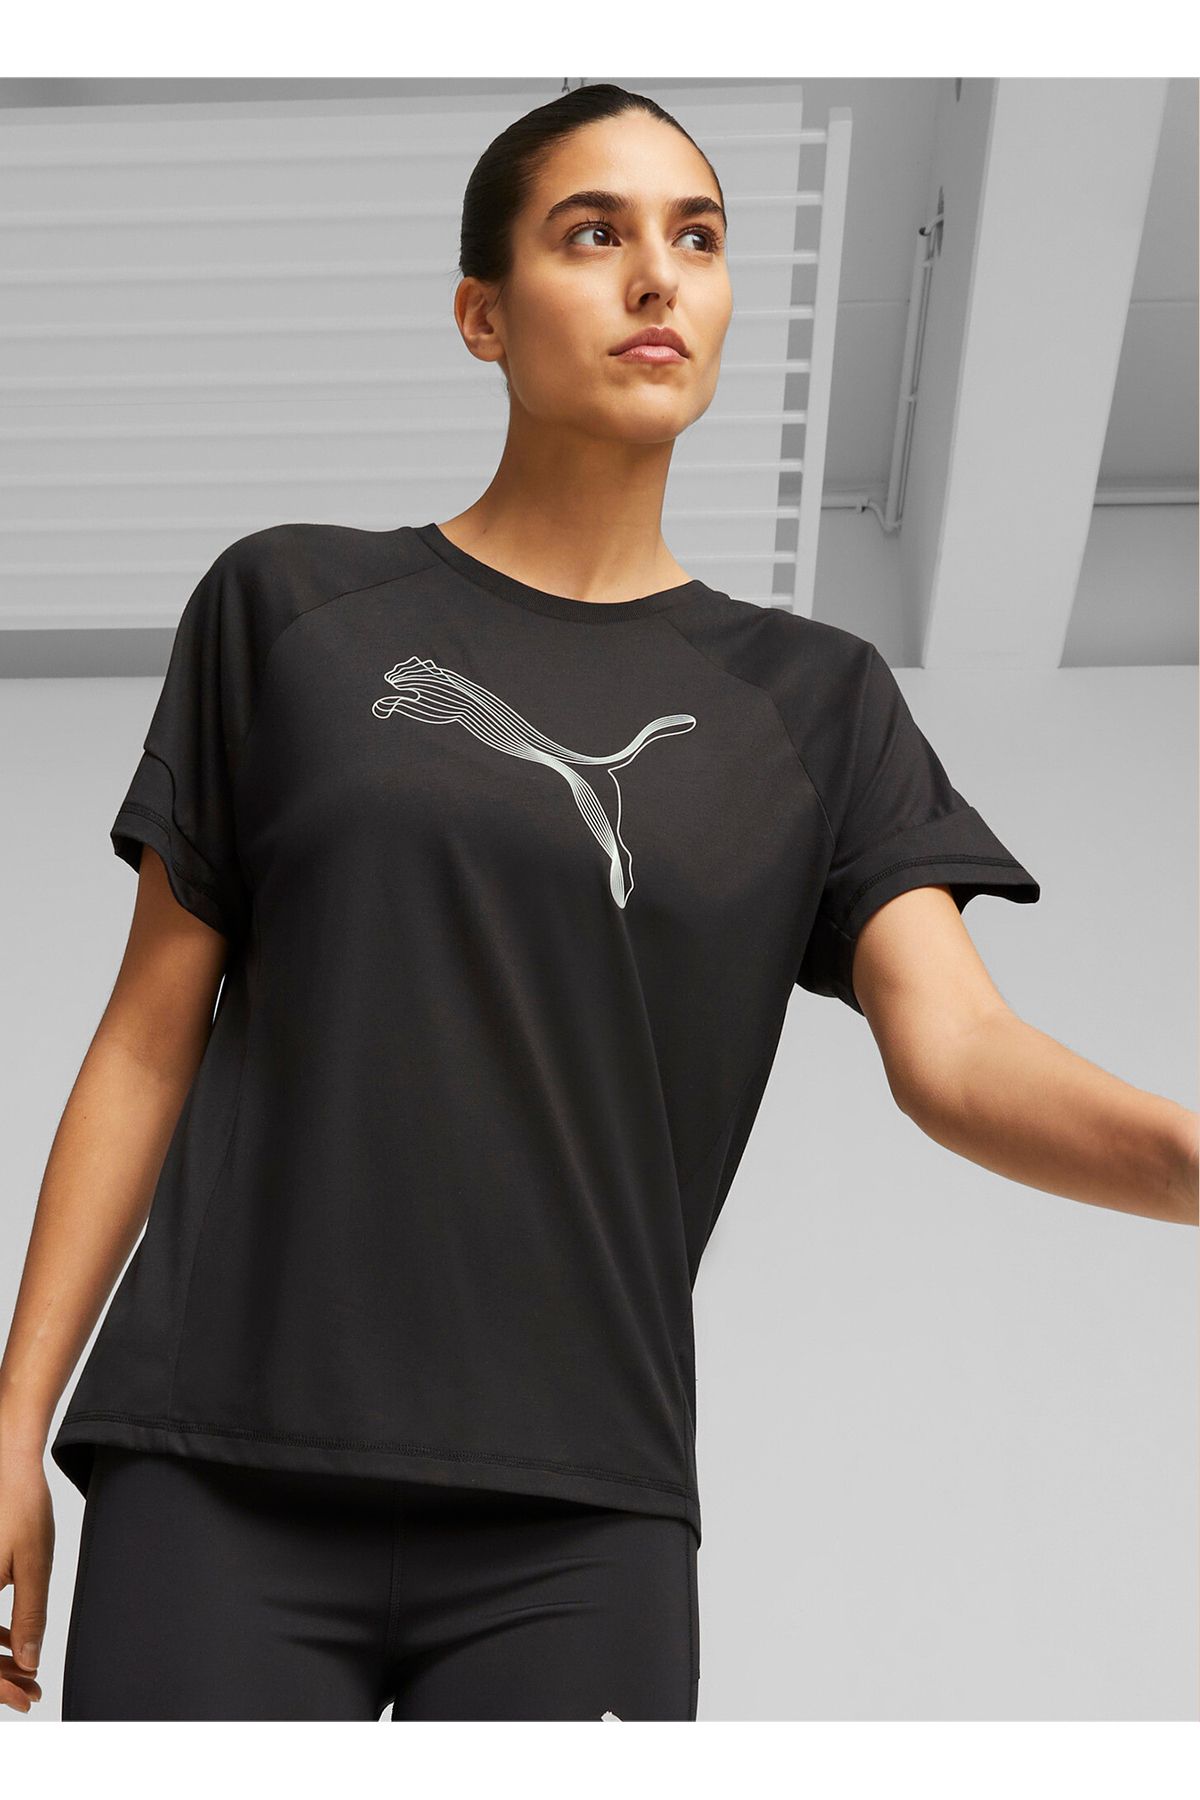 Puma T-shirt, S, Siyah